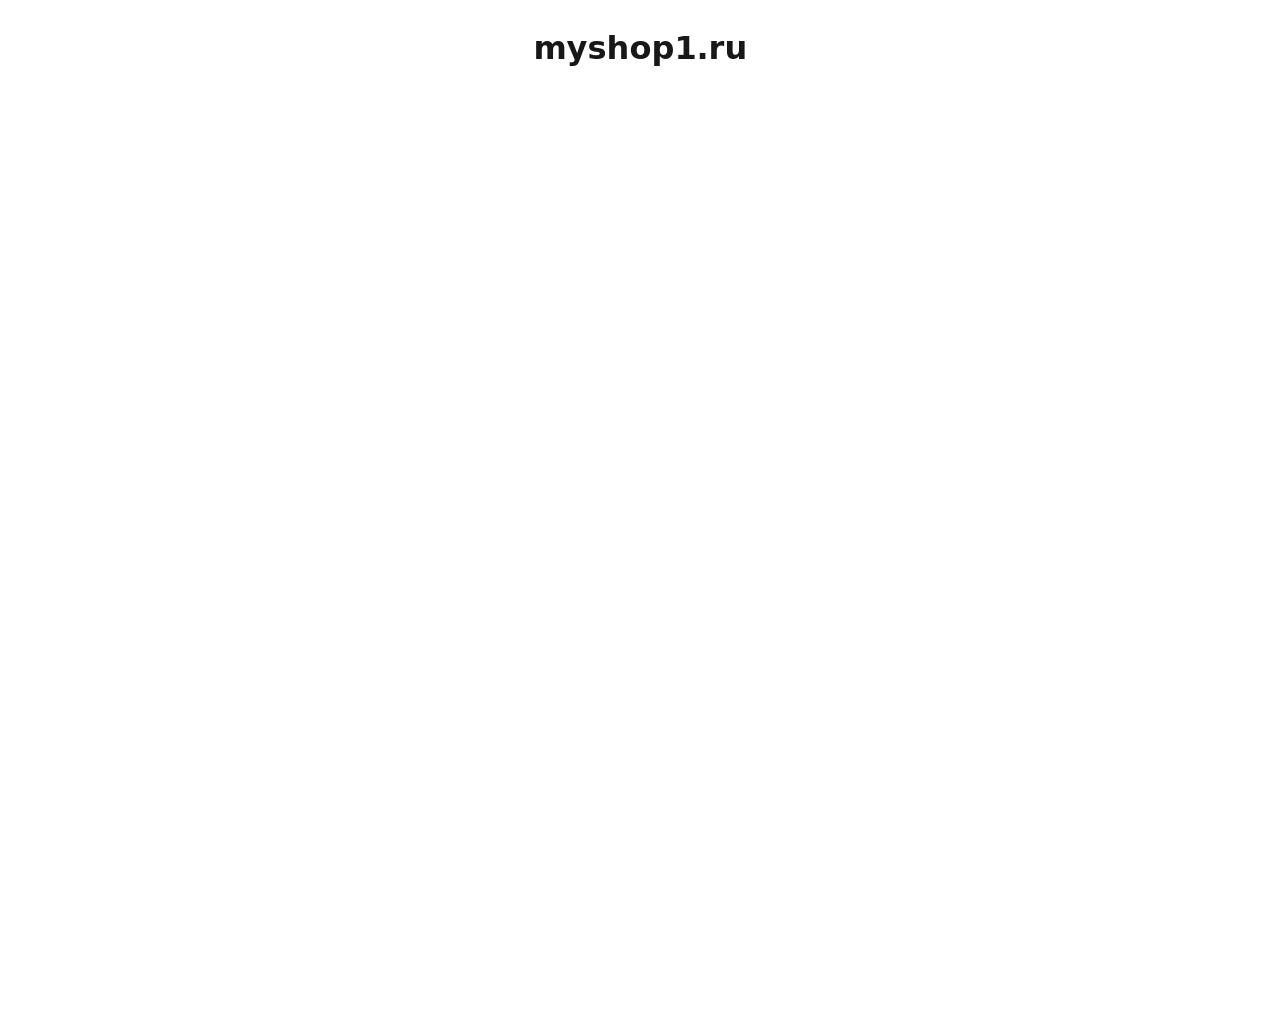 Изображение сайта myshop1.ru в разрешении 1280x1024